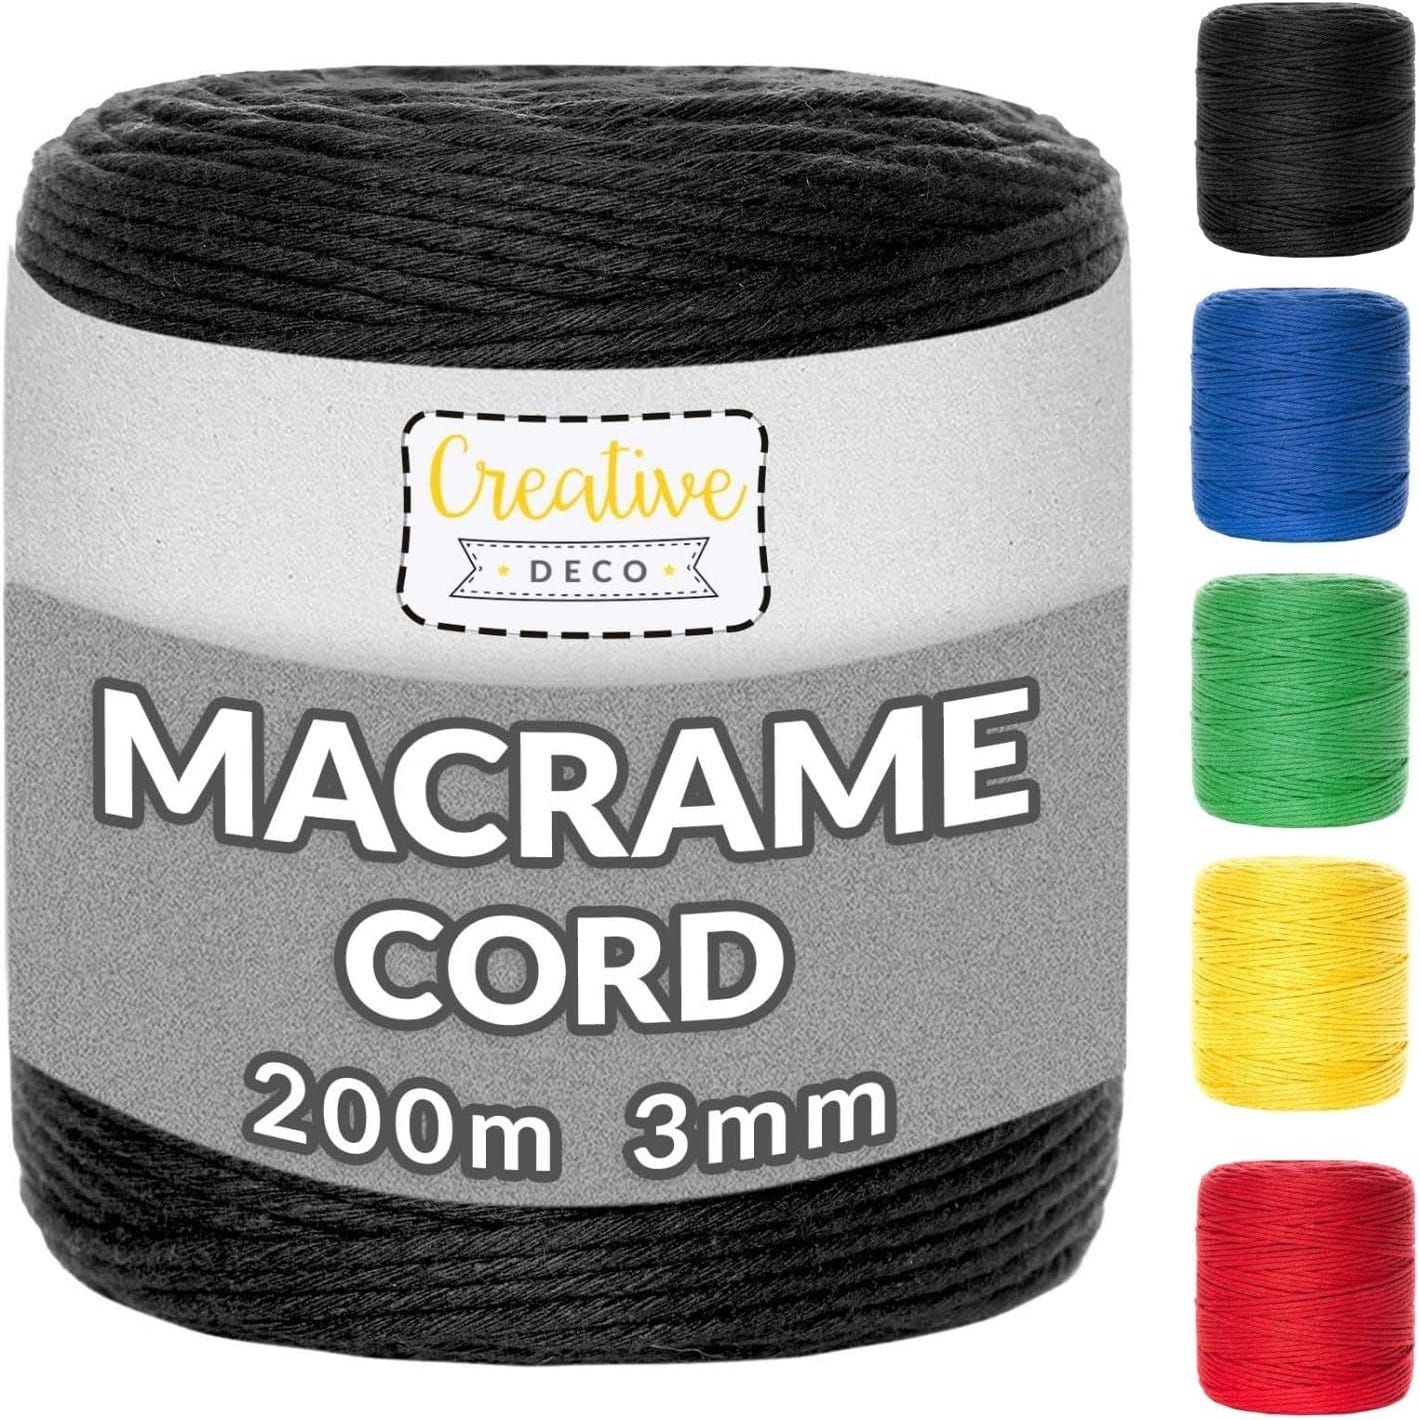 Creative Deco 3mm x 200m Corde Macramé Noir, Fil de Coton et Polyester, +/- 0.5 mm Épaisseur, Ficelle Cordelette Naturel, Decoration Bricolage